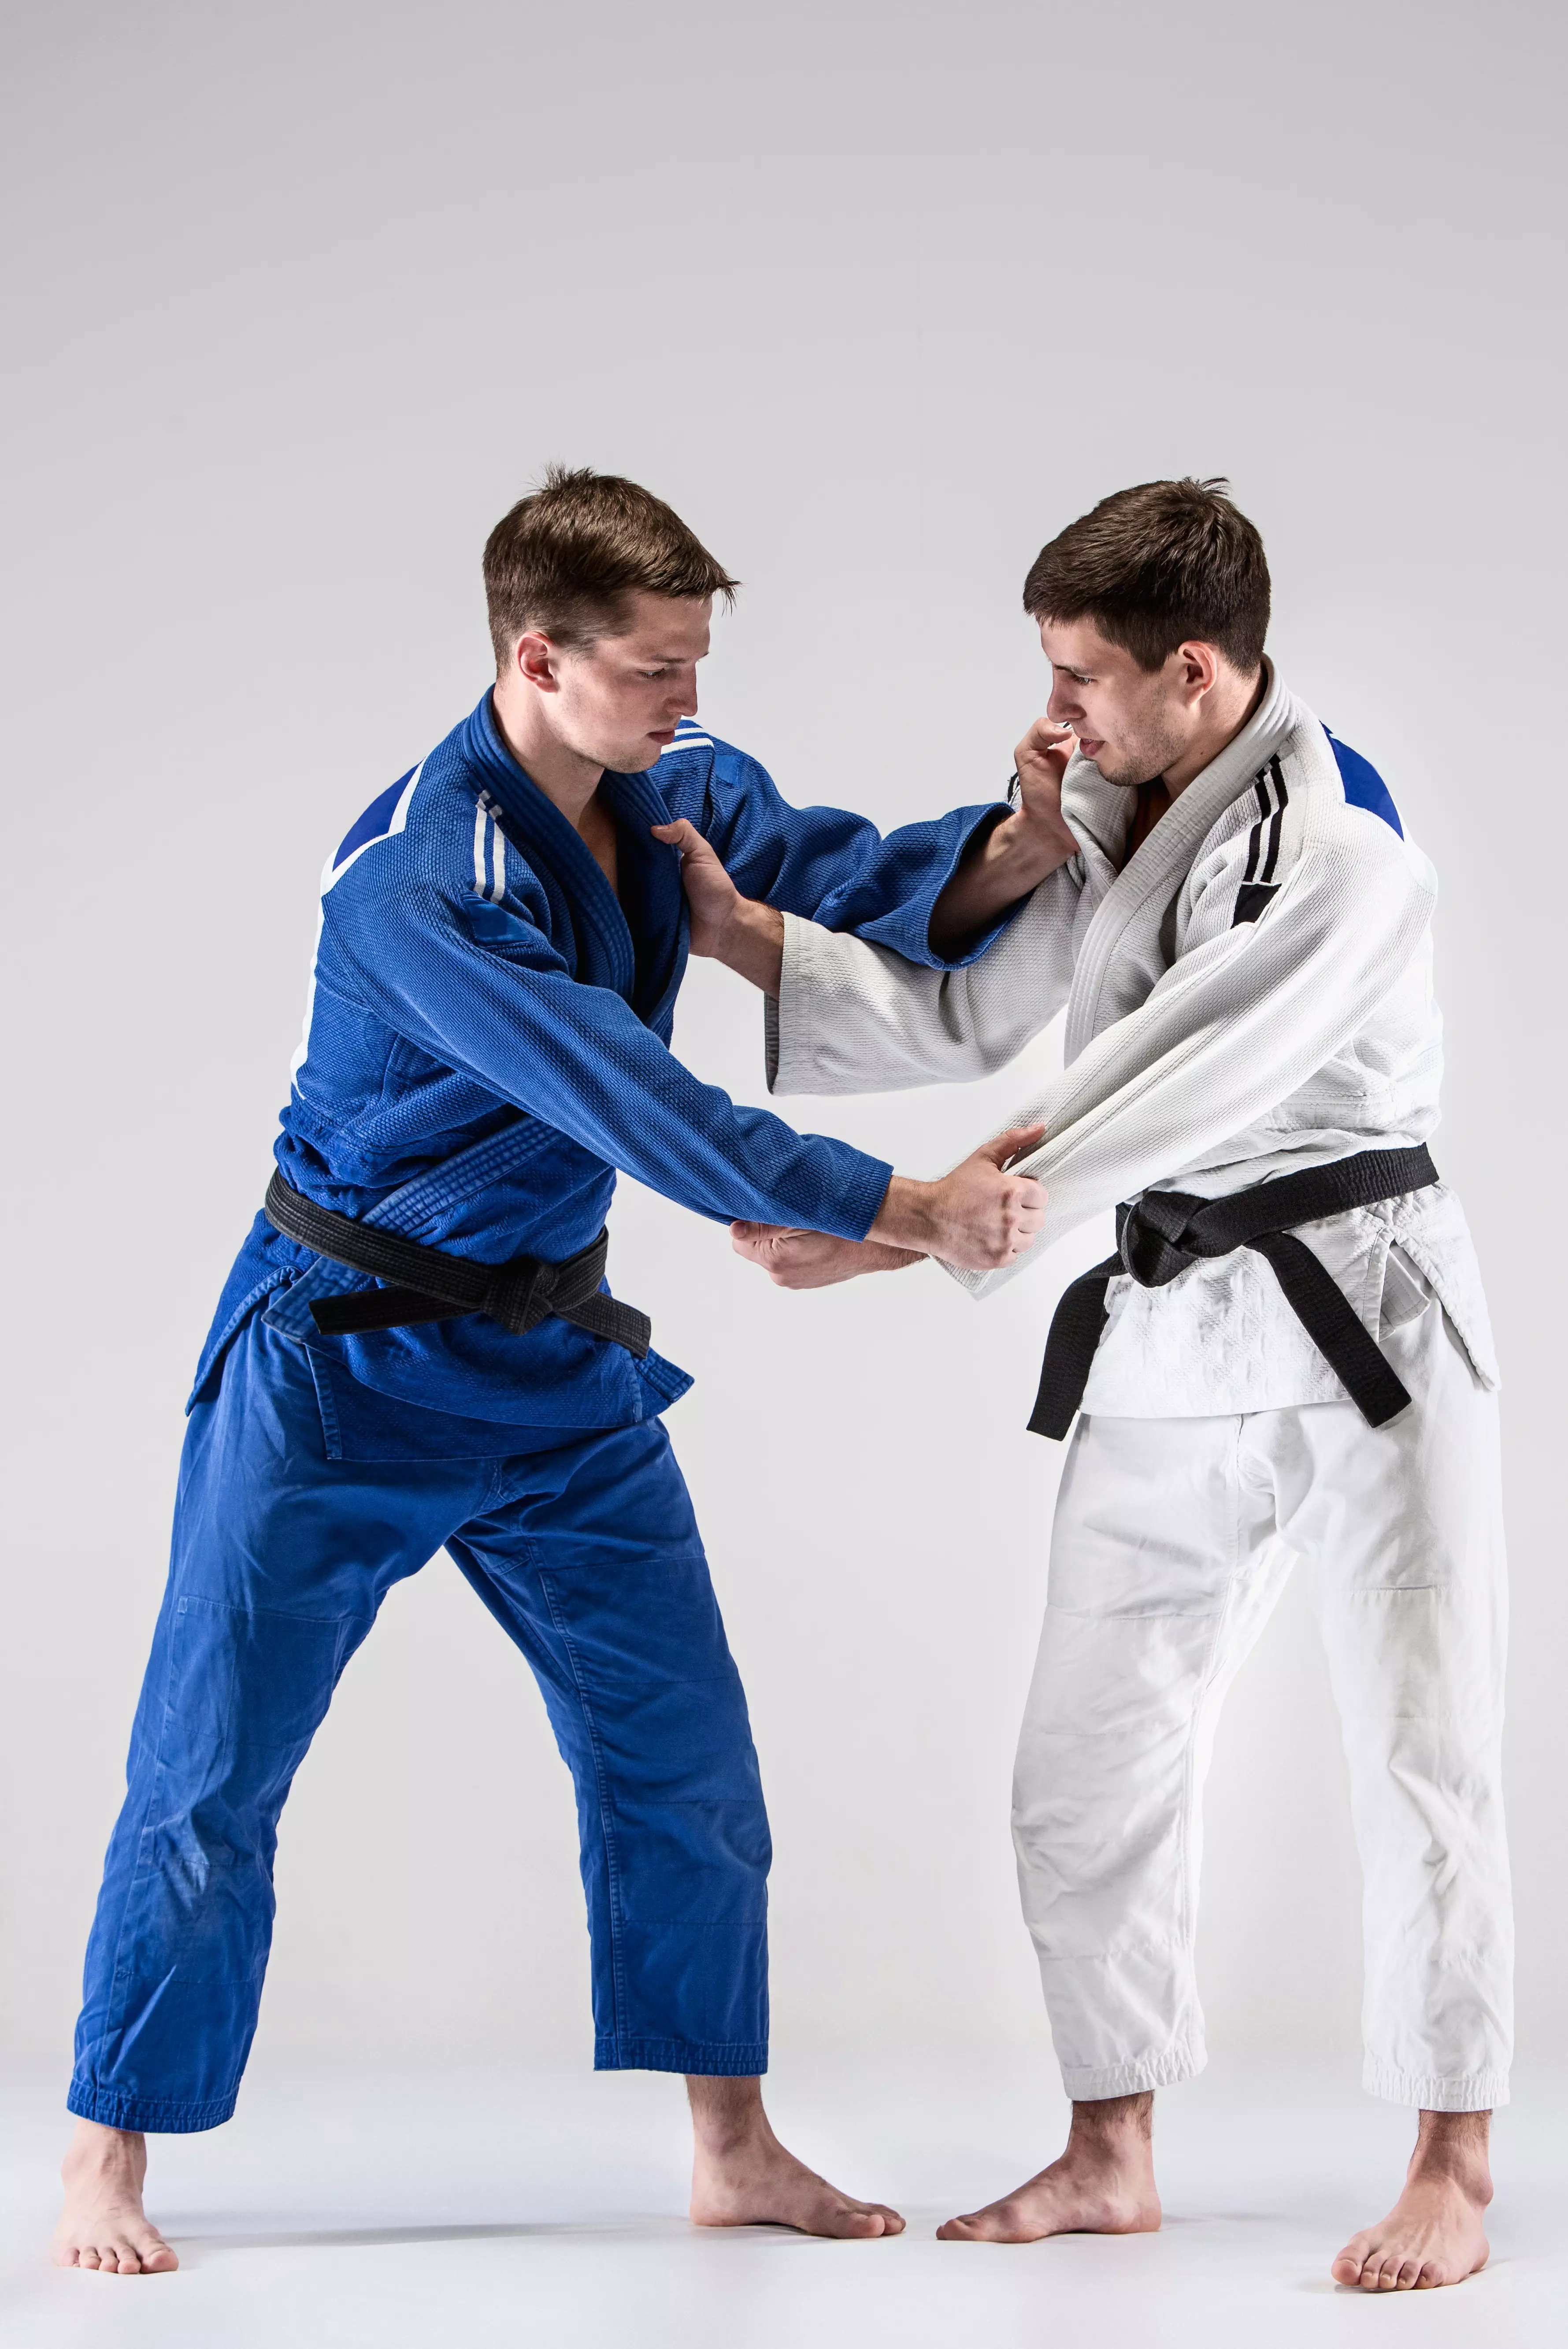 Le caractère sportif et éducatif du judo